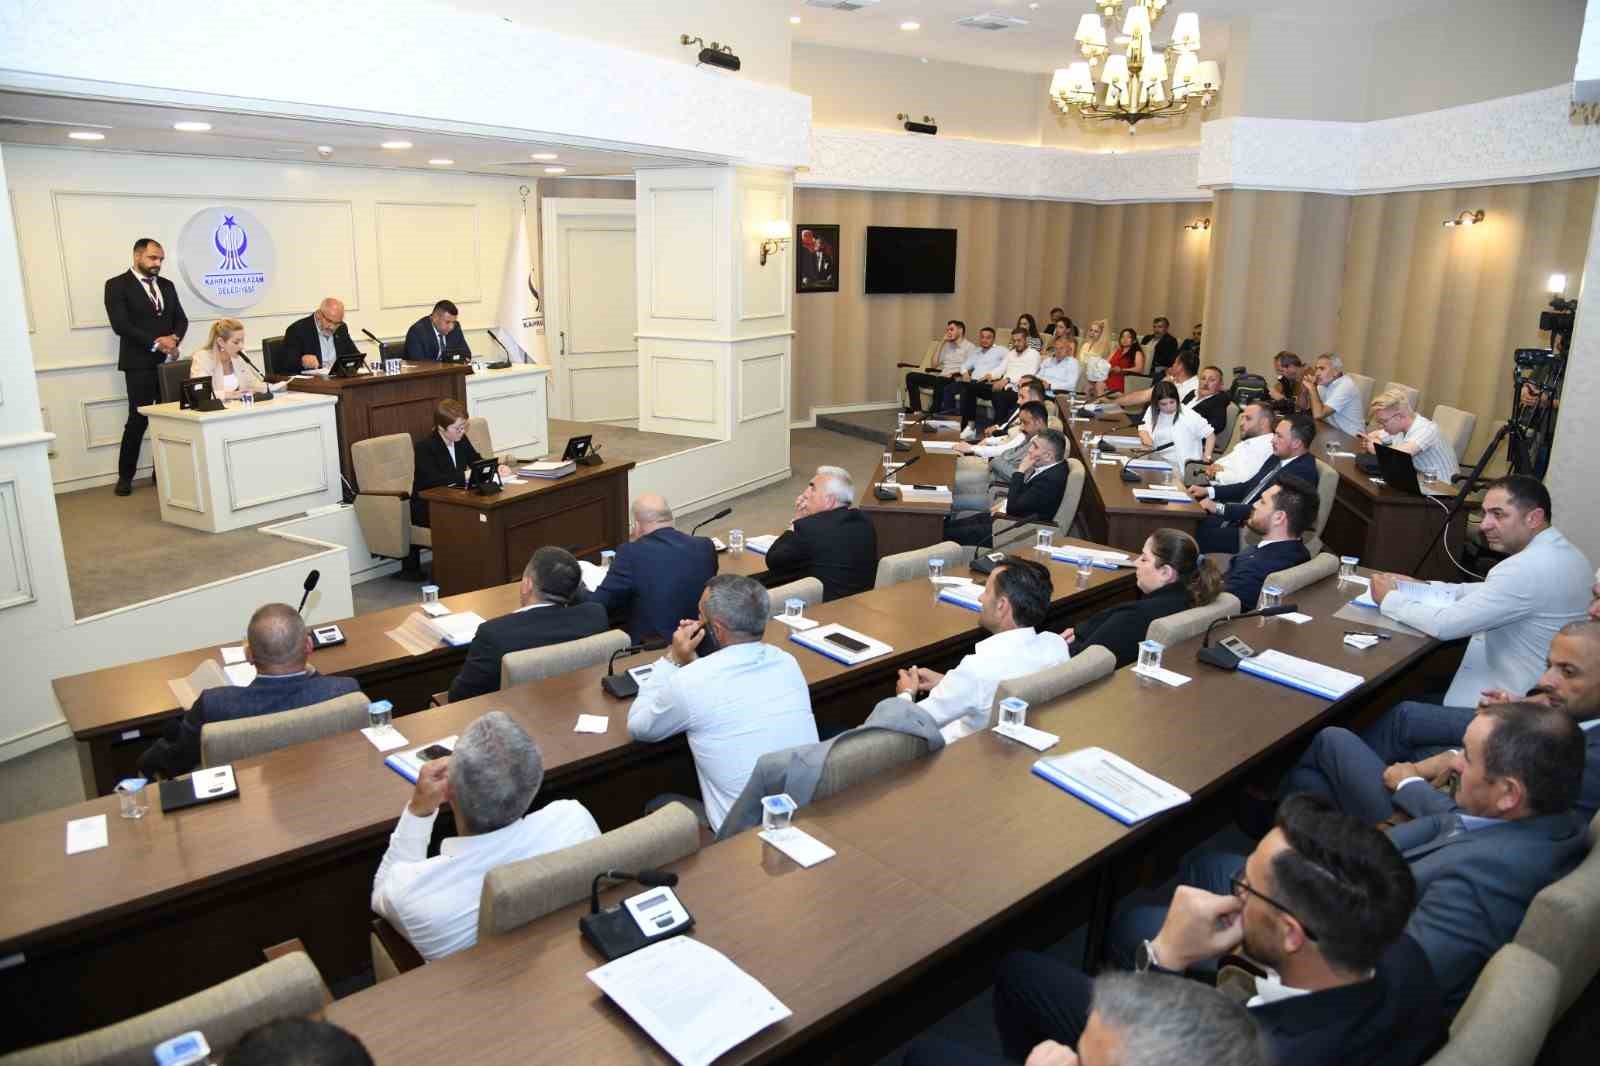 Kahramankazan Belediyesi Haziran ayı meclis toplantısı gerçekleştirildi
